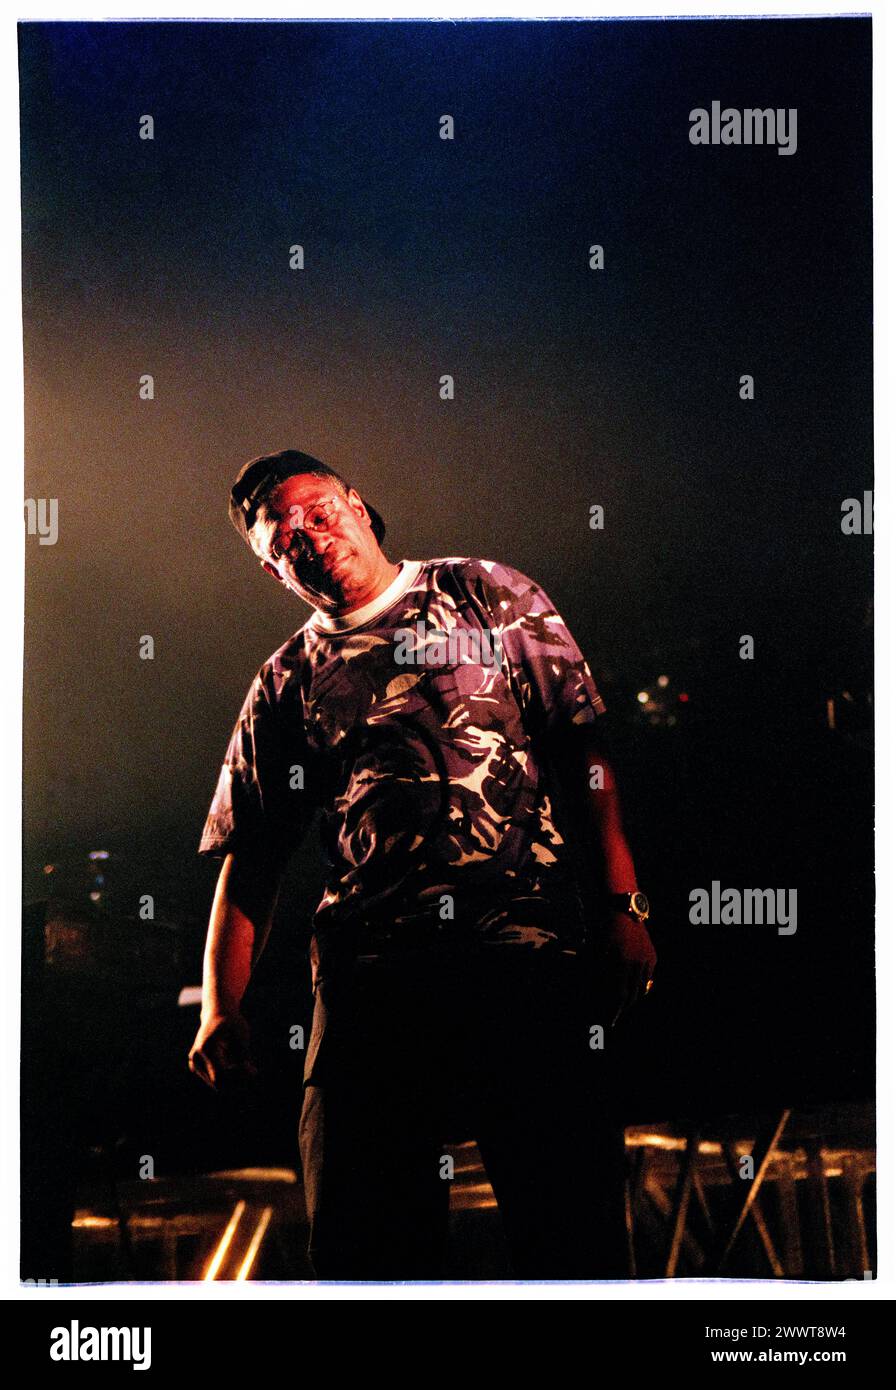 MASSIVE ATTACK, MEZZANINE TOUR, 1998: La leggenda reggae Horace Andy, cantante ospite dei Massive Attack alla Cardiff International Arena CIA di Cardiff, Galles, Regno Unito, il 7 dicembre 1998. La band è in tour con il loro terzo album "Mezzanine". Fotografia: Rob Watkins. INFO: Massive Attack, un collettivo di trip-hop britannico formato a Bristol nel 1988, ha ridefinito la musica elettronica con i loro paesaggi sonori atmosferici e i testi socialmente consapevoli. Il loro stile che sfidava il genere fu un'influenza mondiale sulla scena musicale. Foto Stock